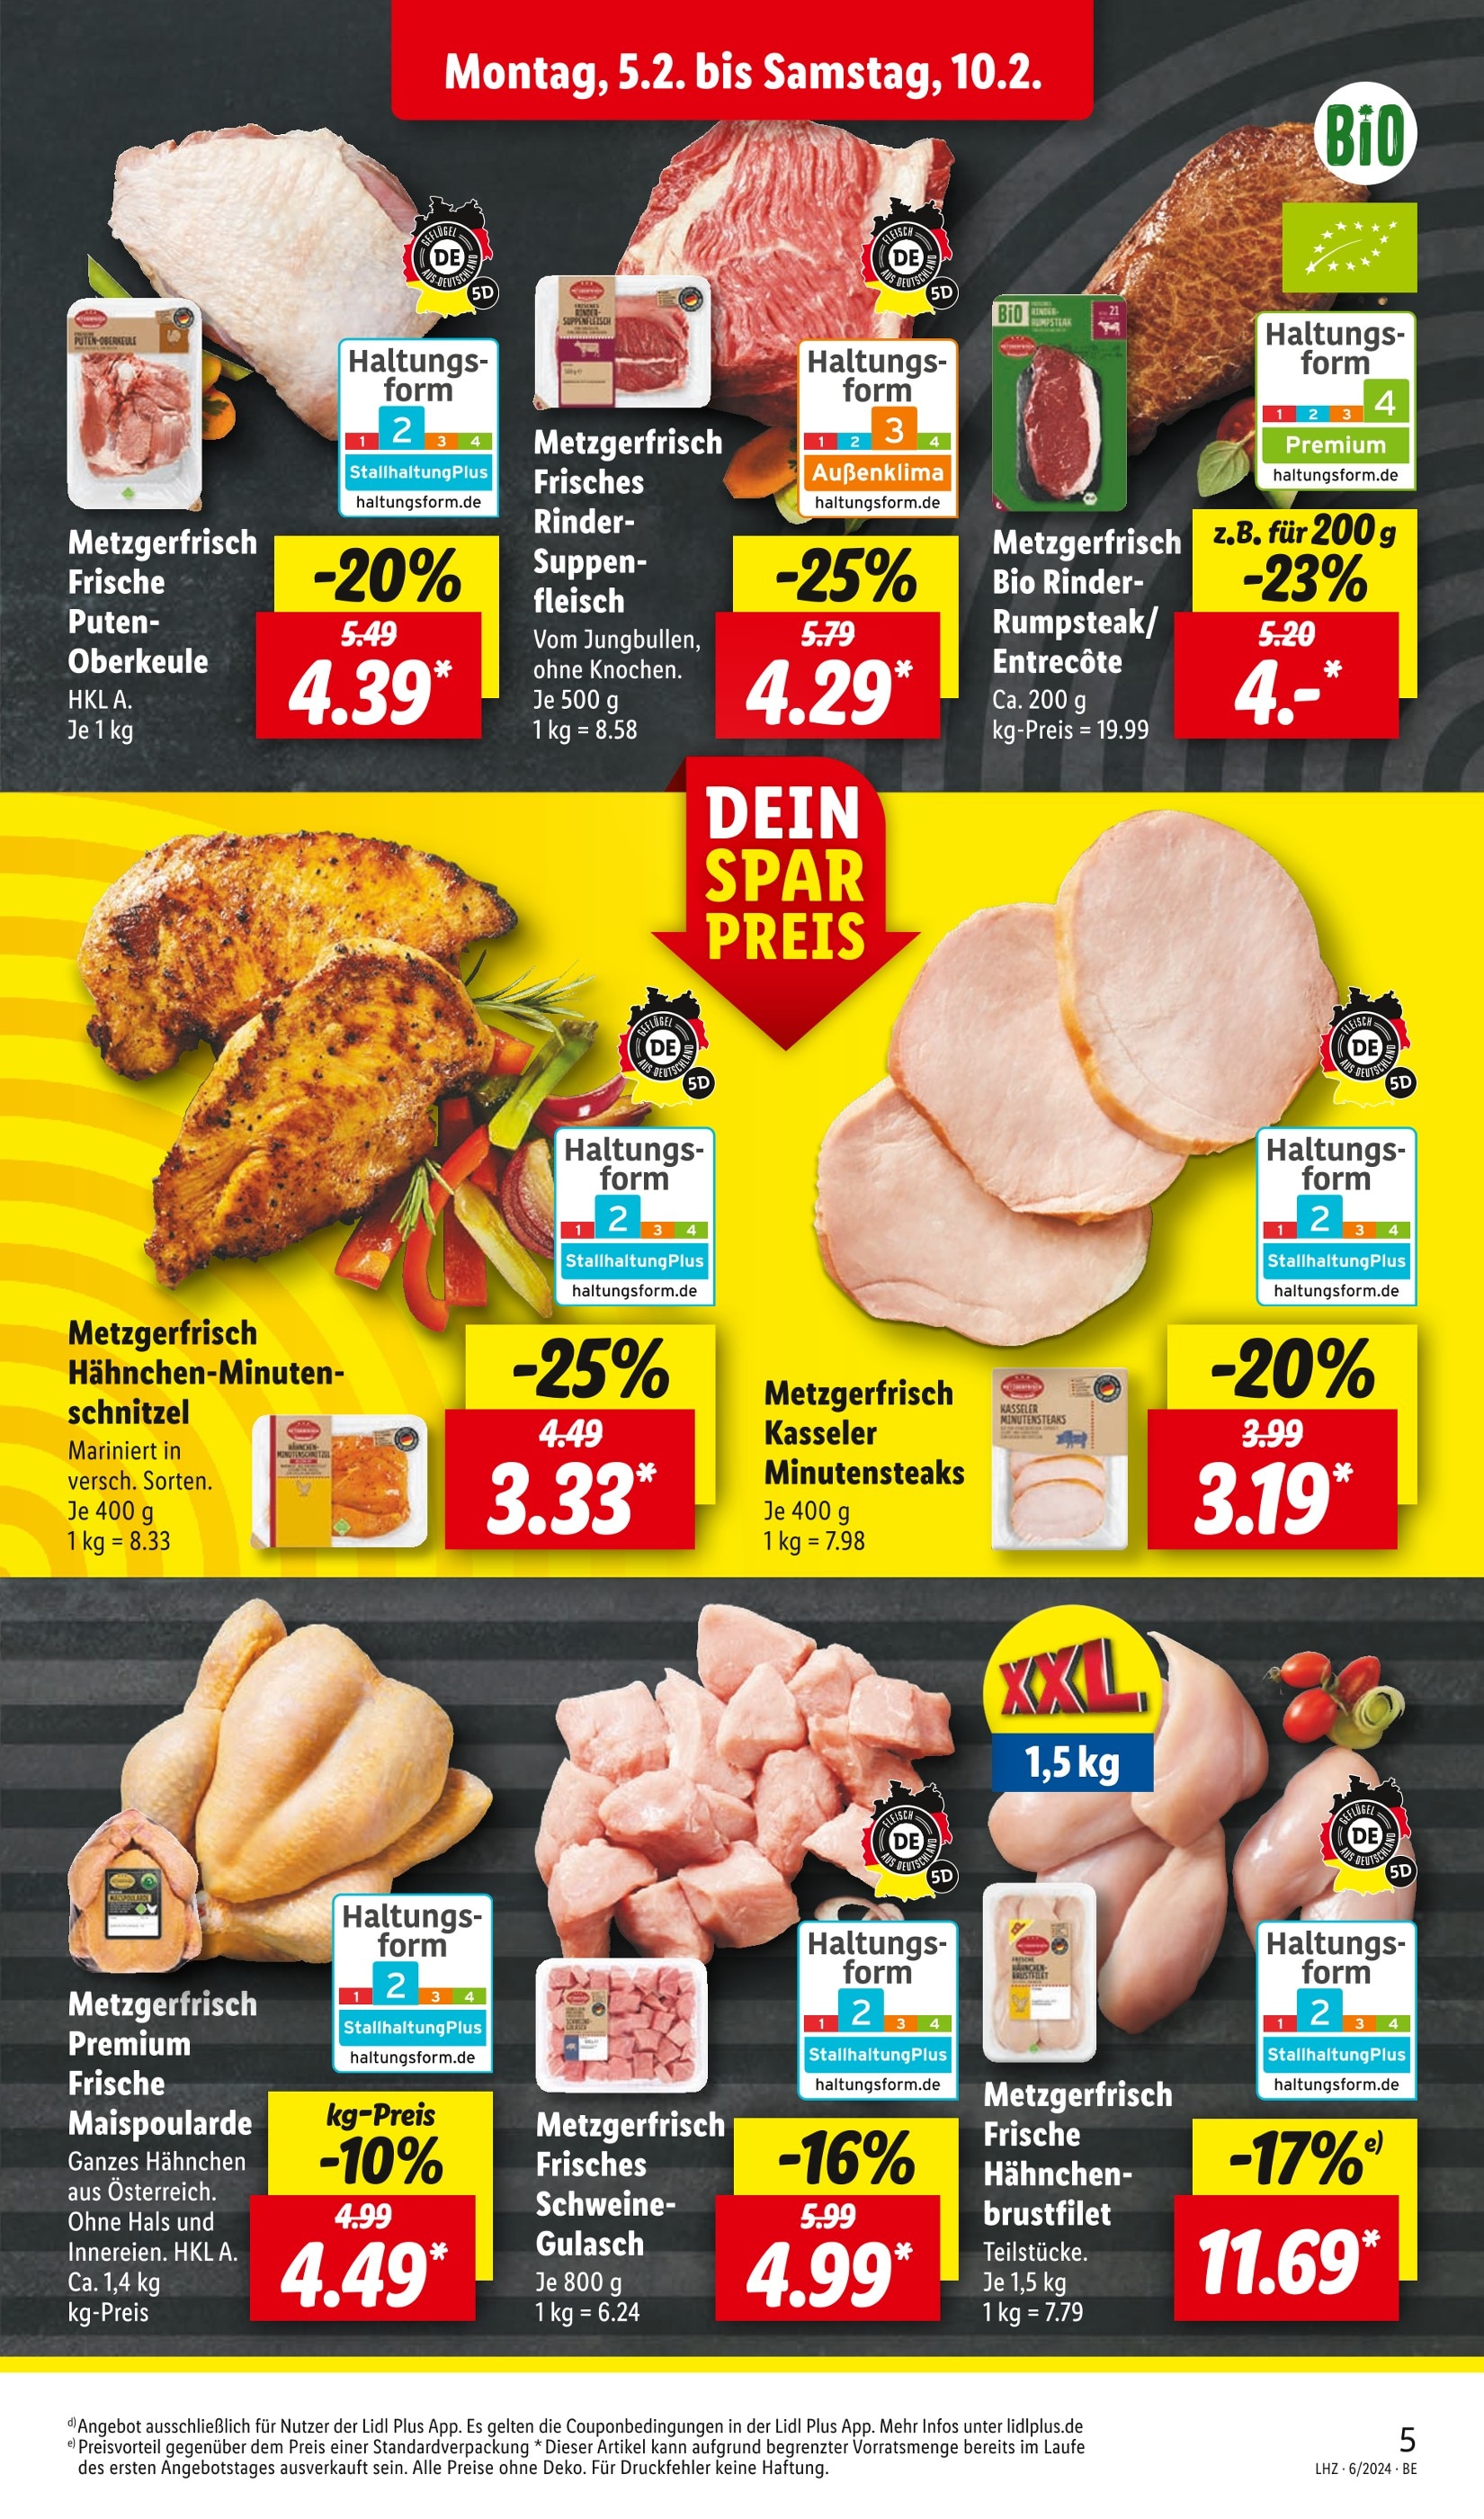 Suppenfleisch kaufen » günstige Preis zum Angebote Top Suppenfleisch